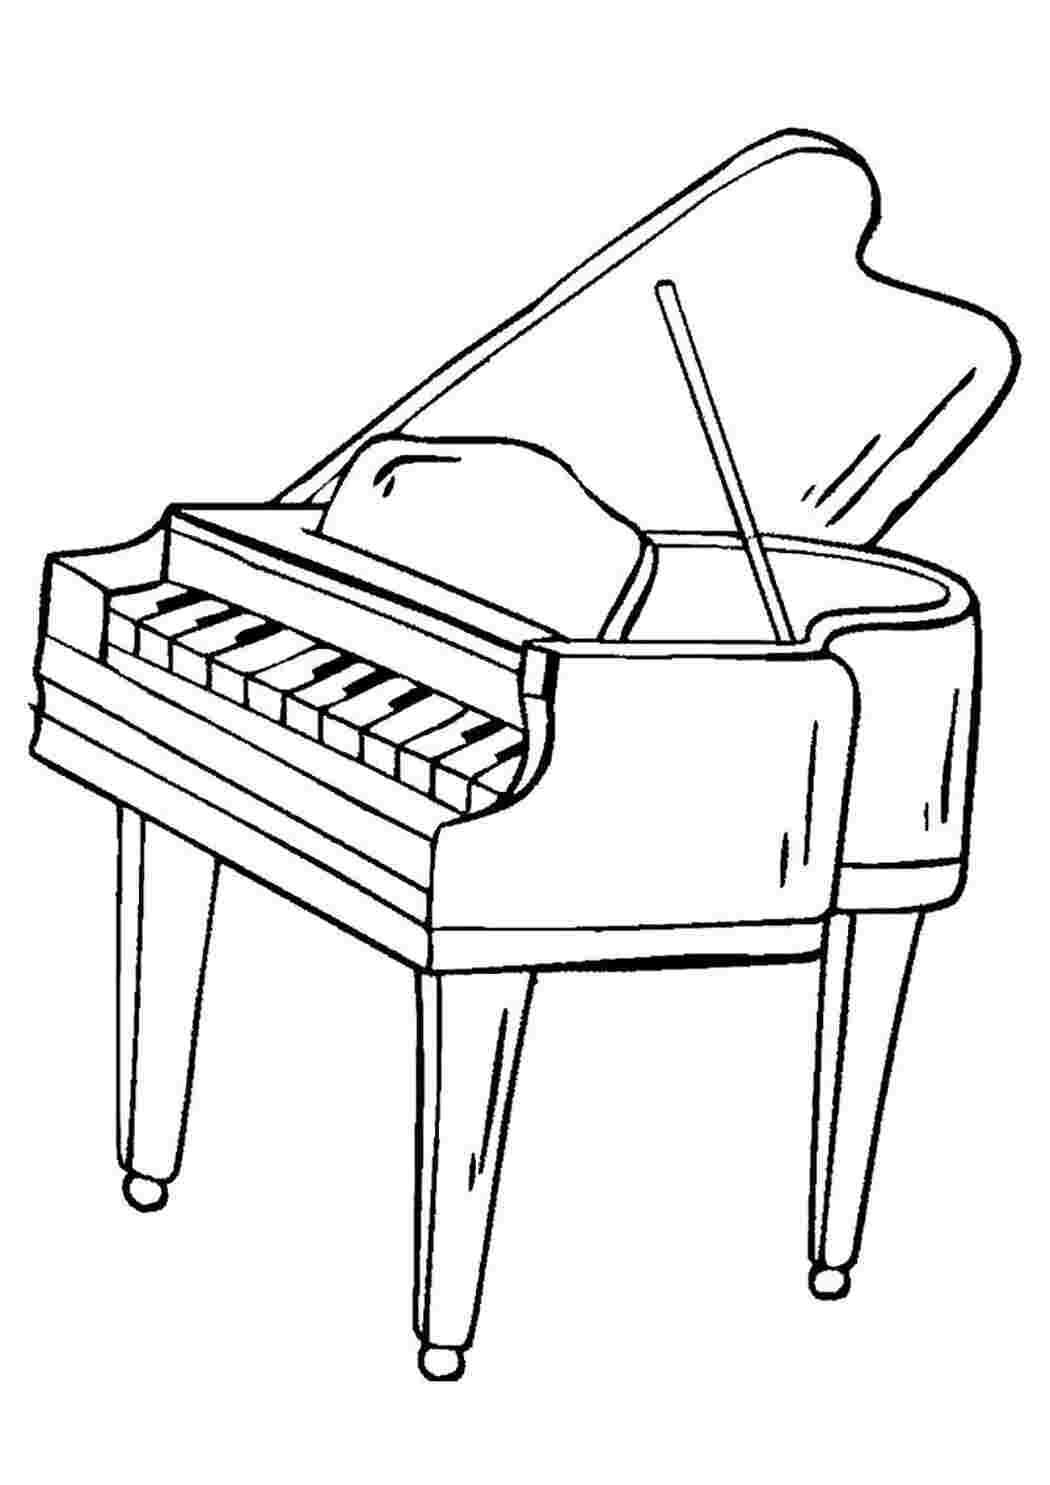 Раскраски Скачать бесплатно раскраску рояль. Музыкальный инструмент раскраски для детей